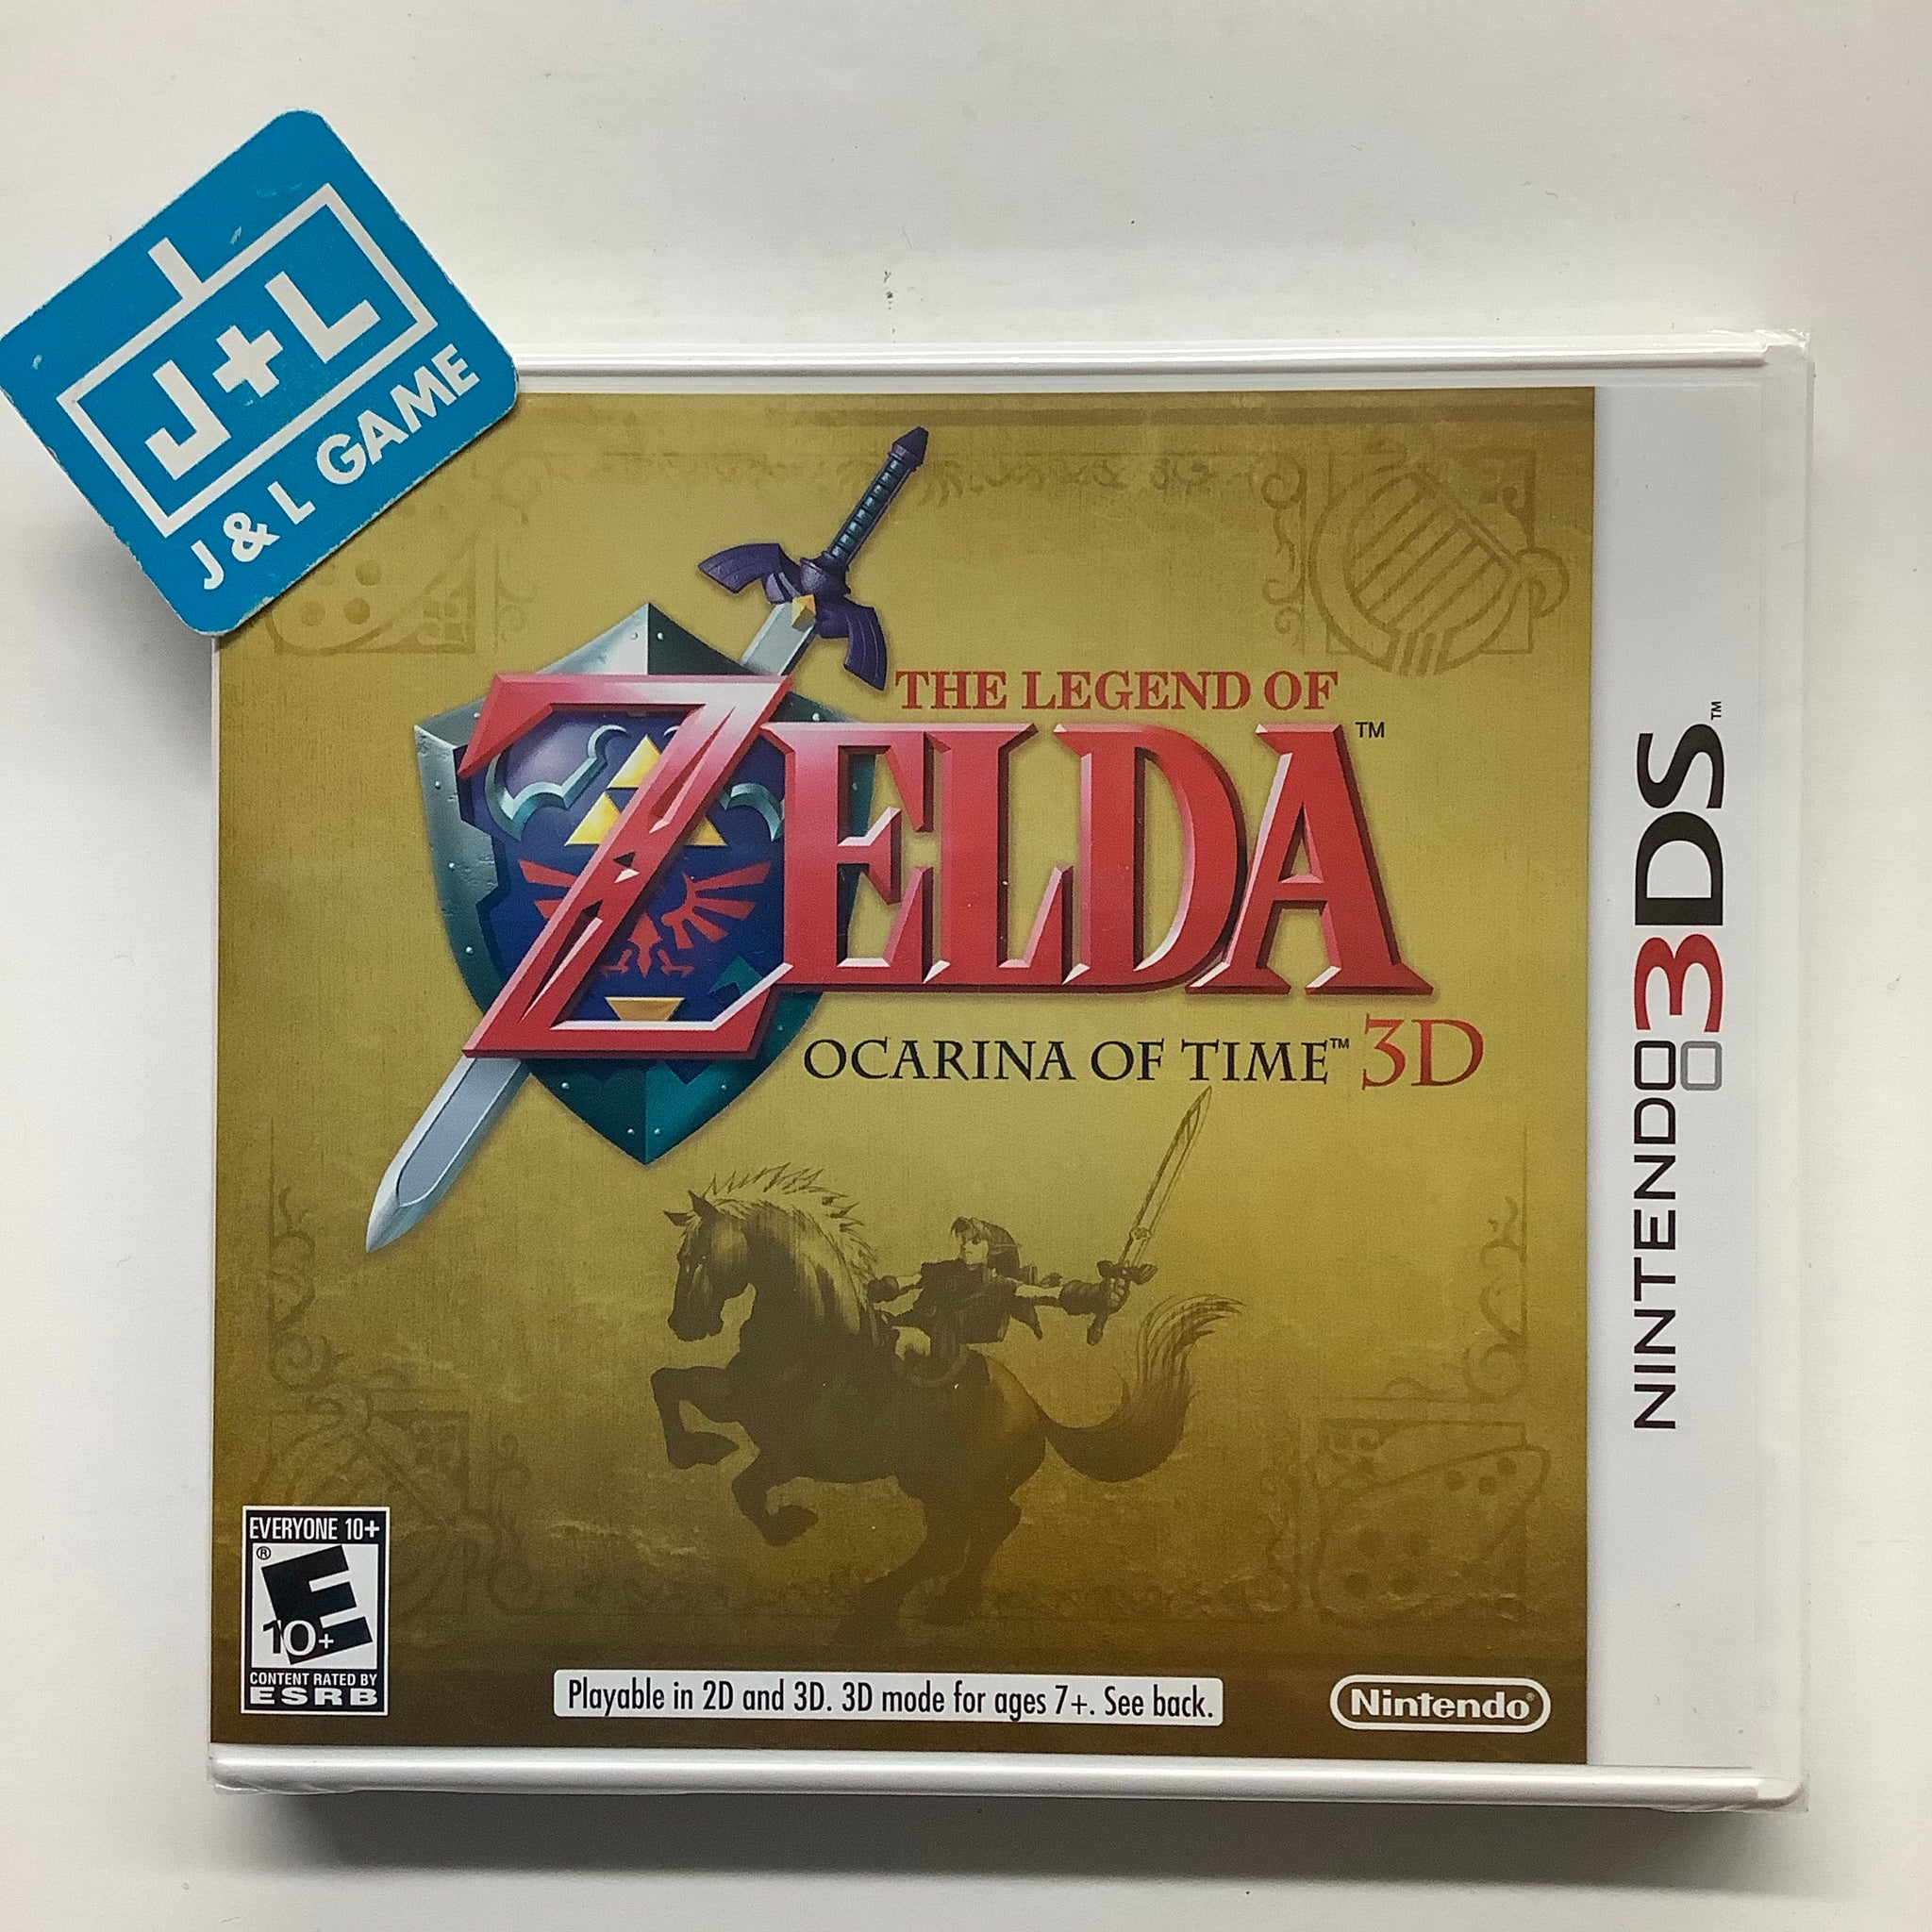 The Legend of Zelda: Ocarina of Time 3D, 3DS